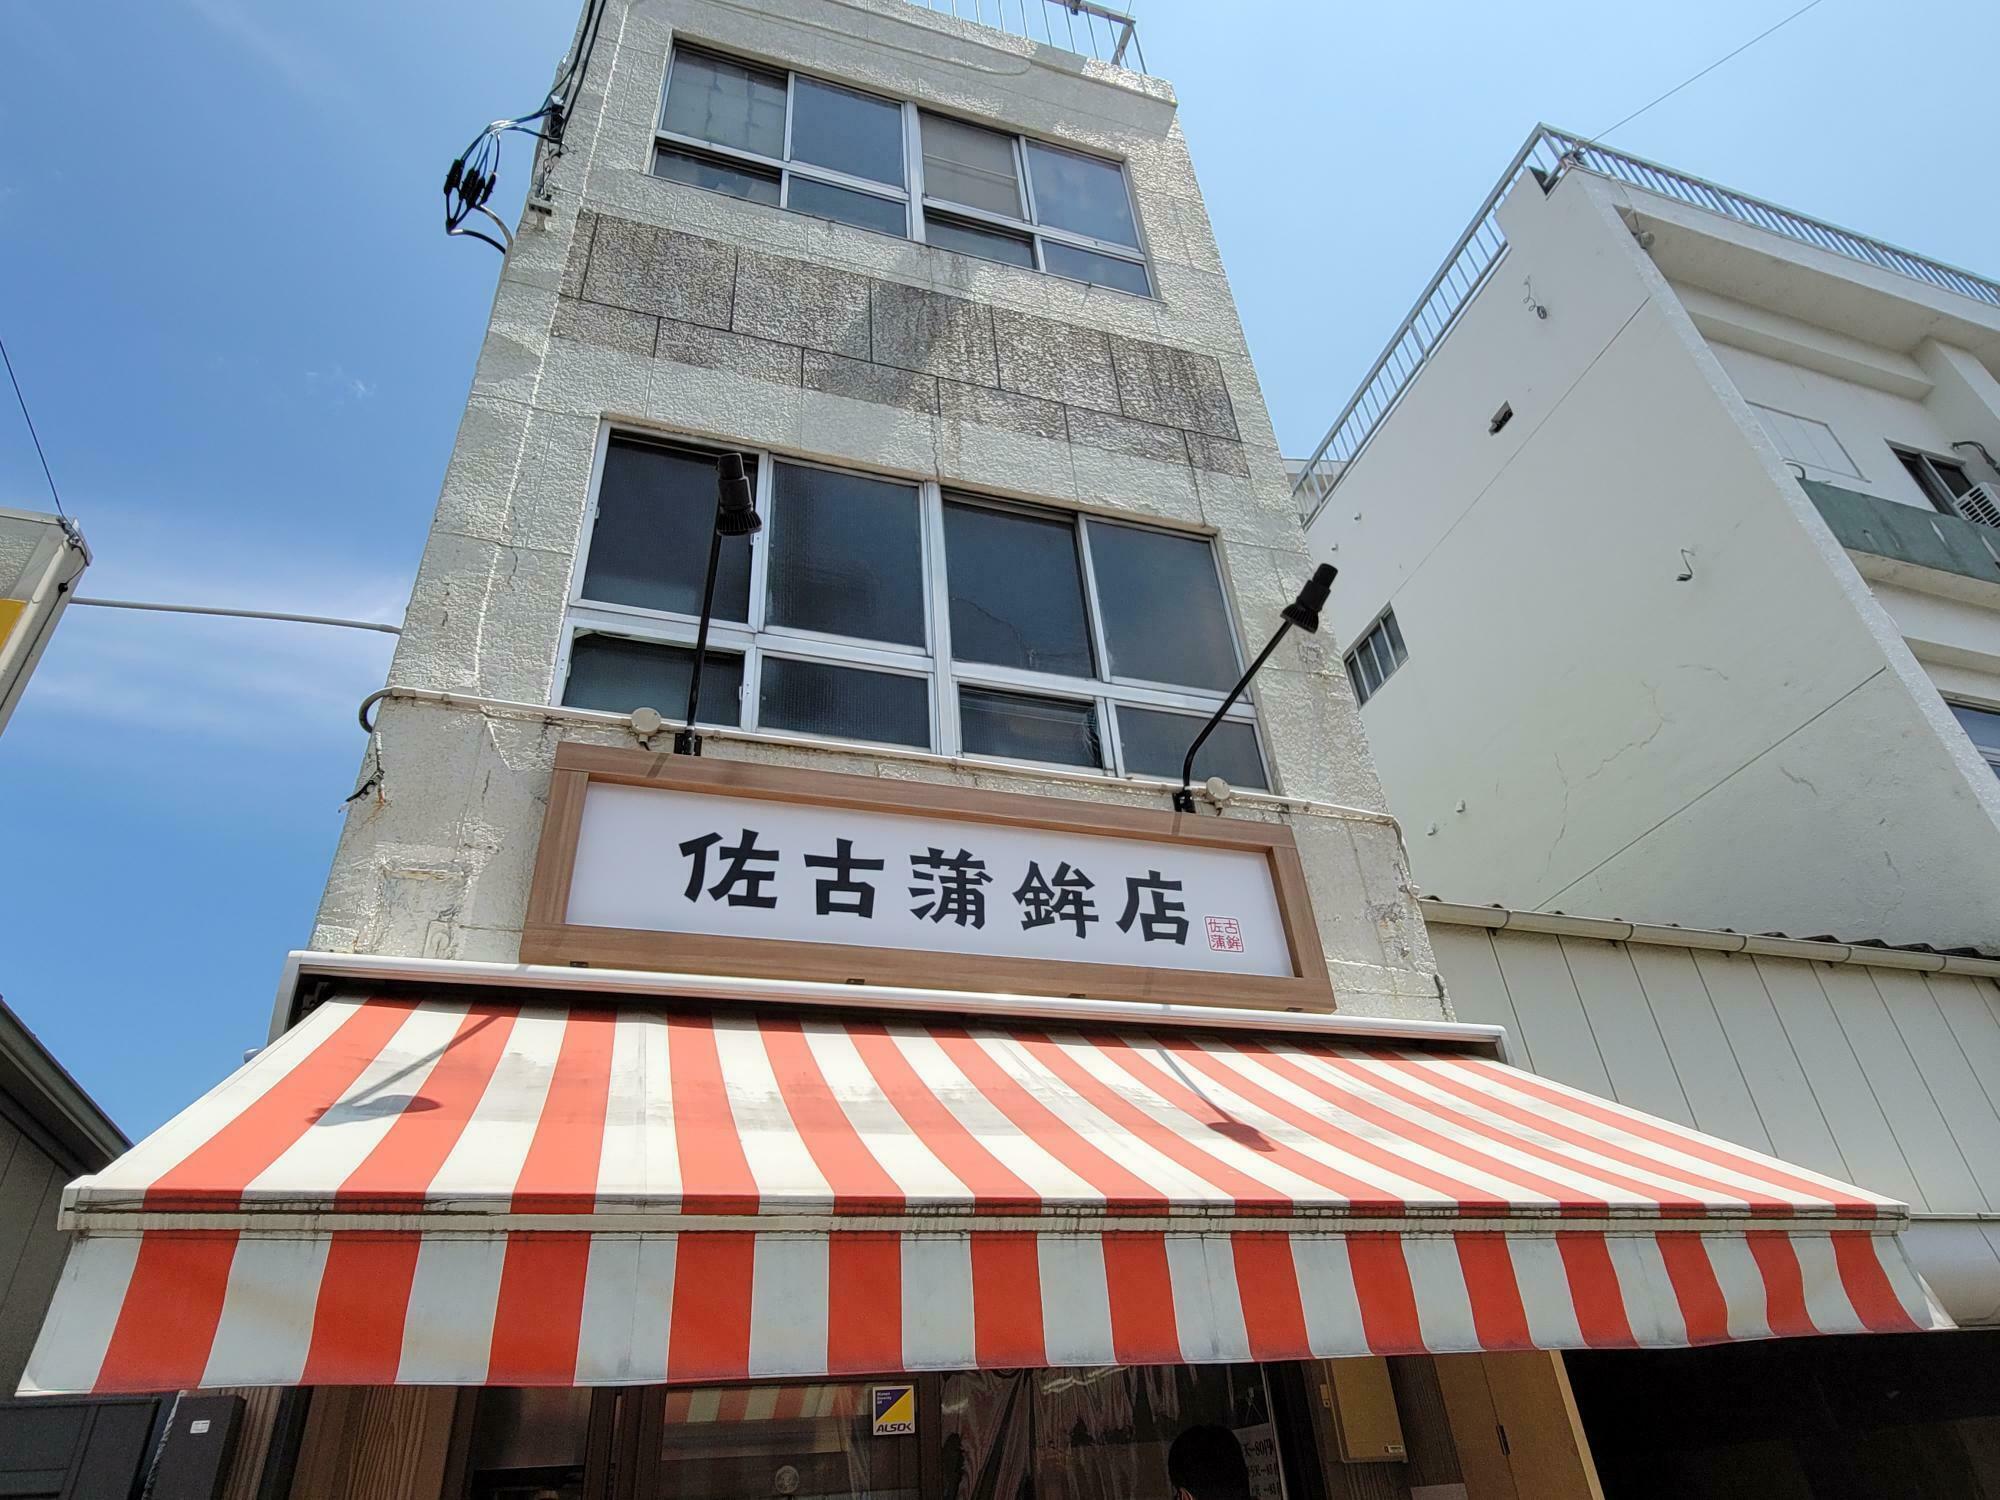 御芋屋「きいろと紫 徳島店」近くにある「佐古蒲鉾店」。